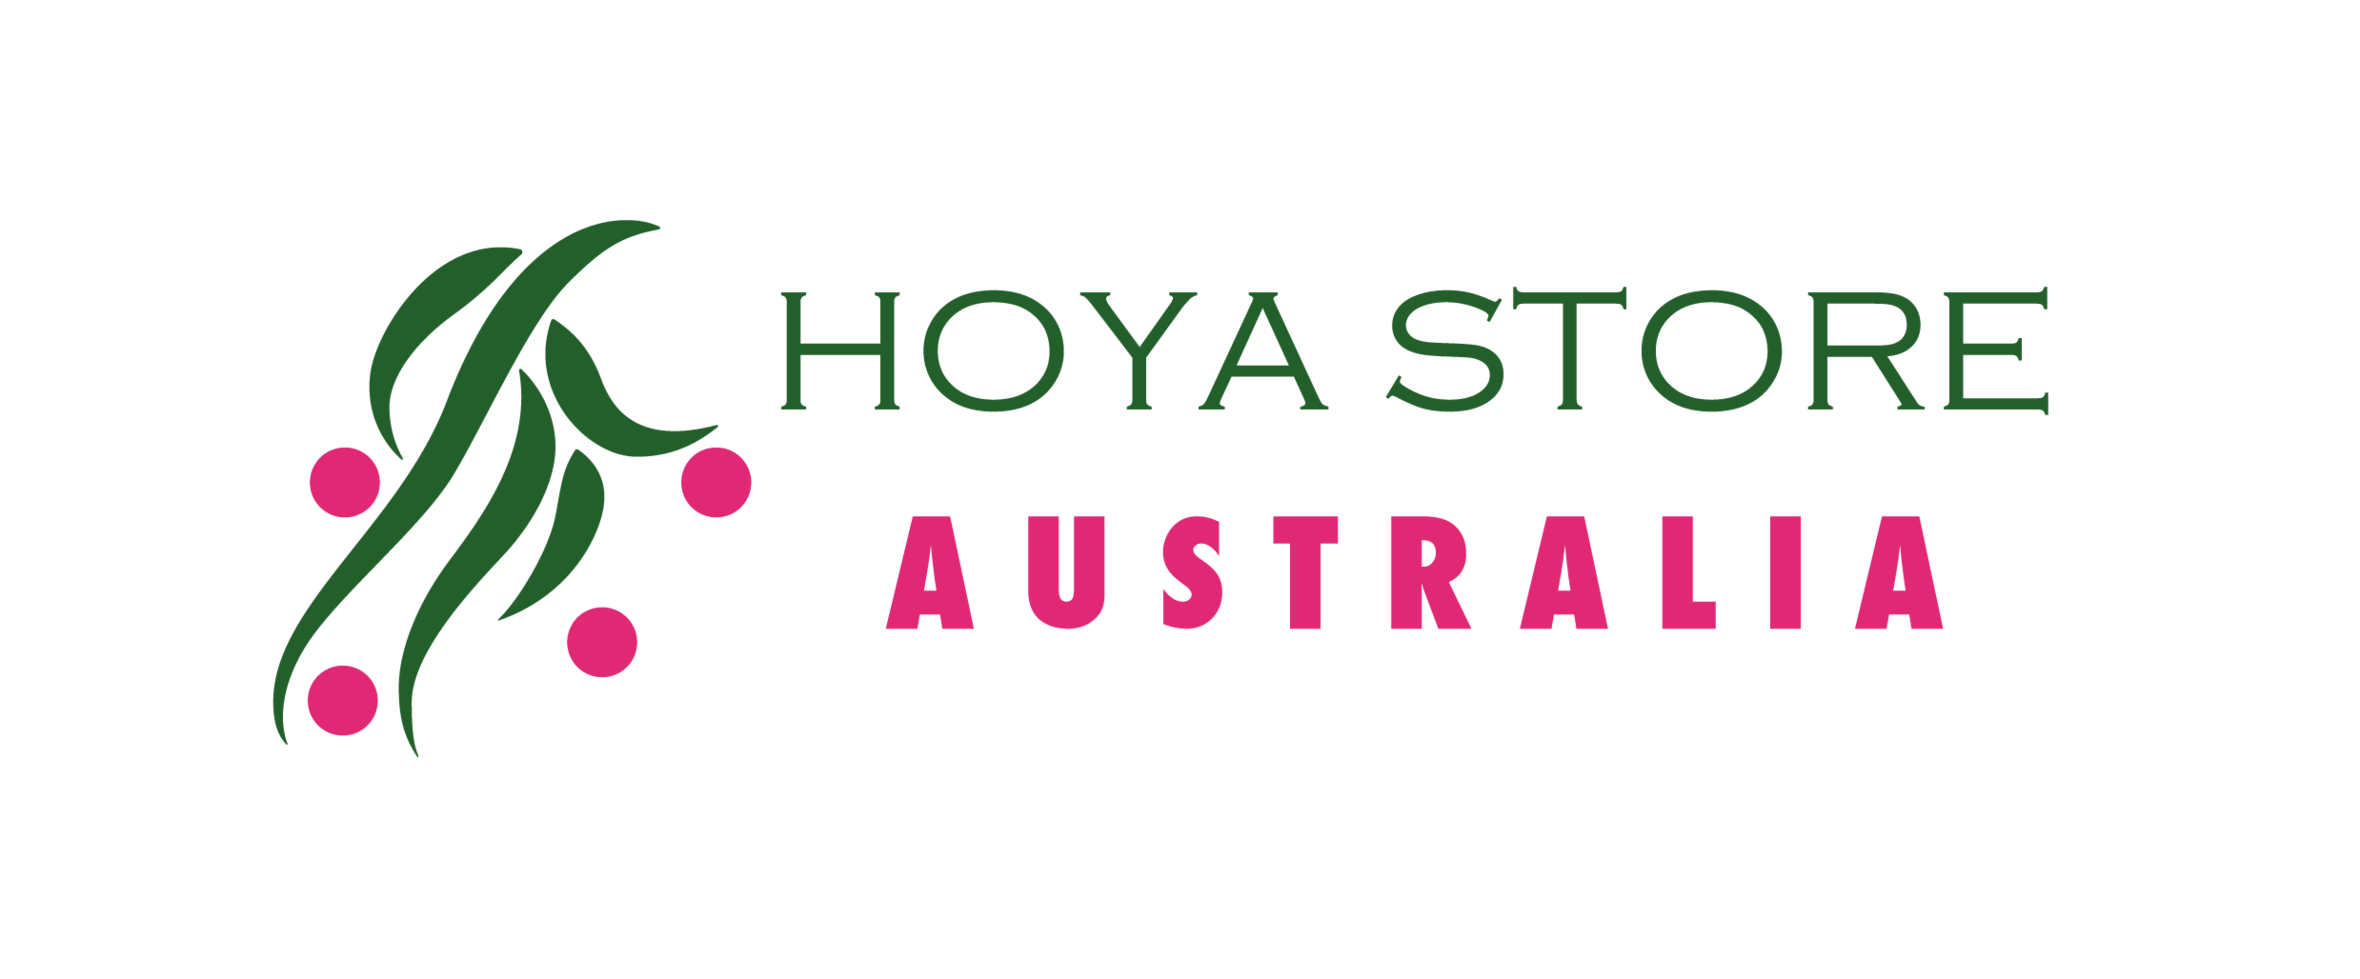 Australia's Online Hoya Store